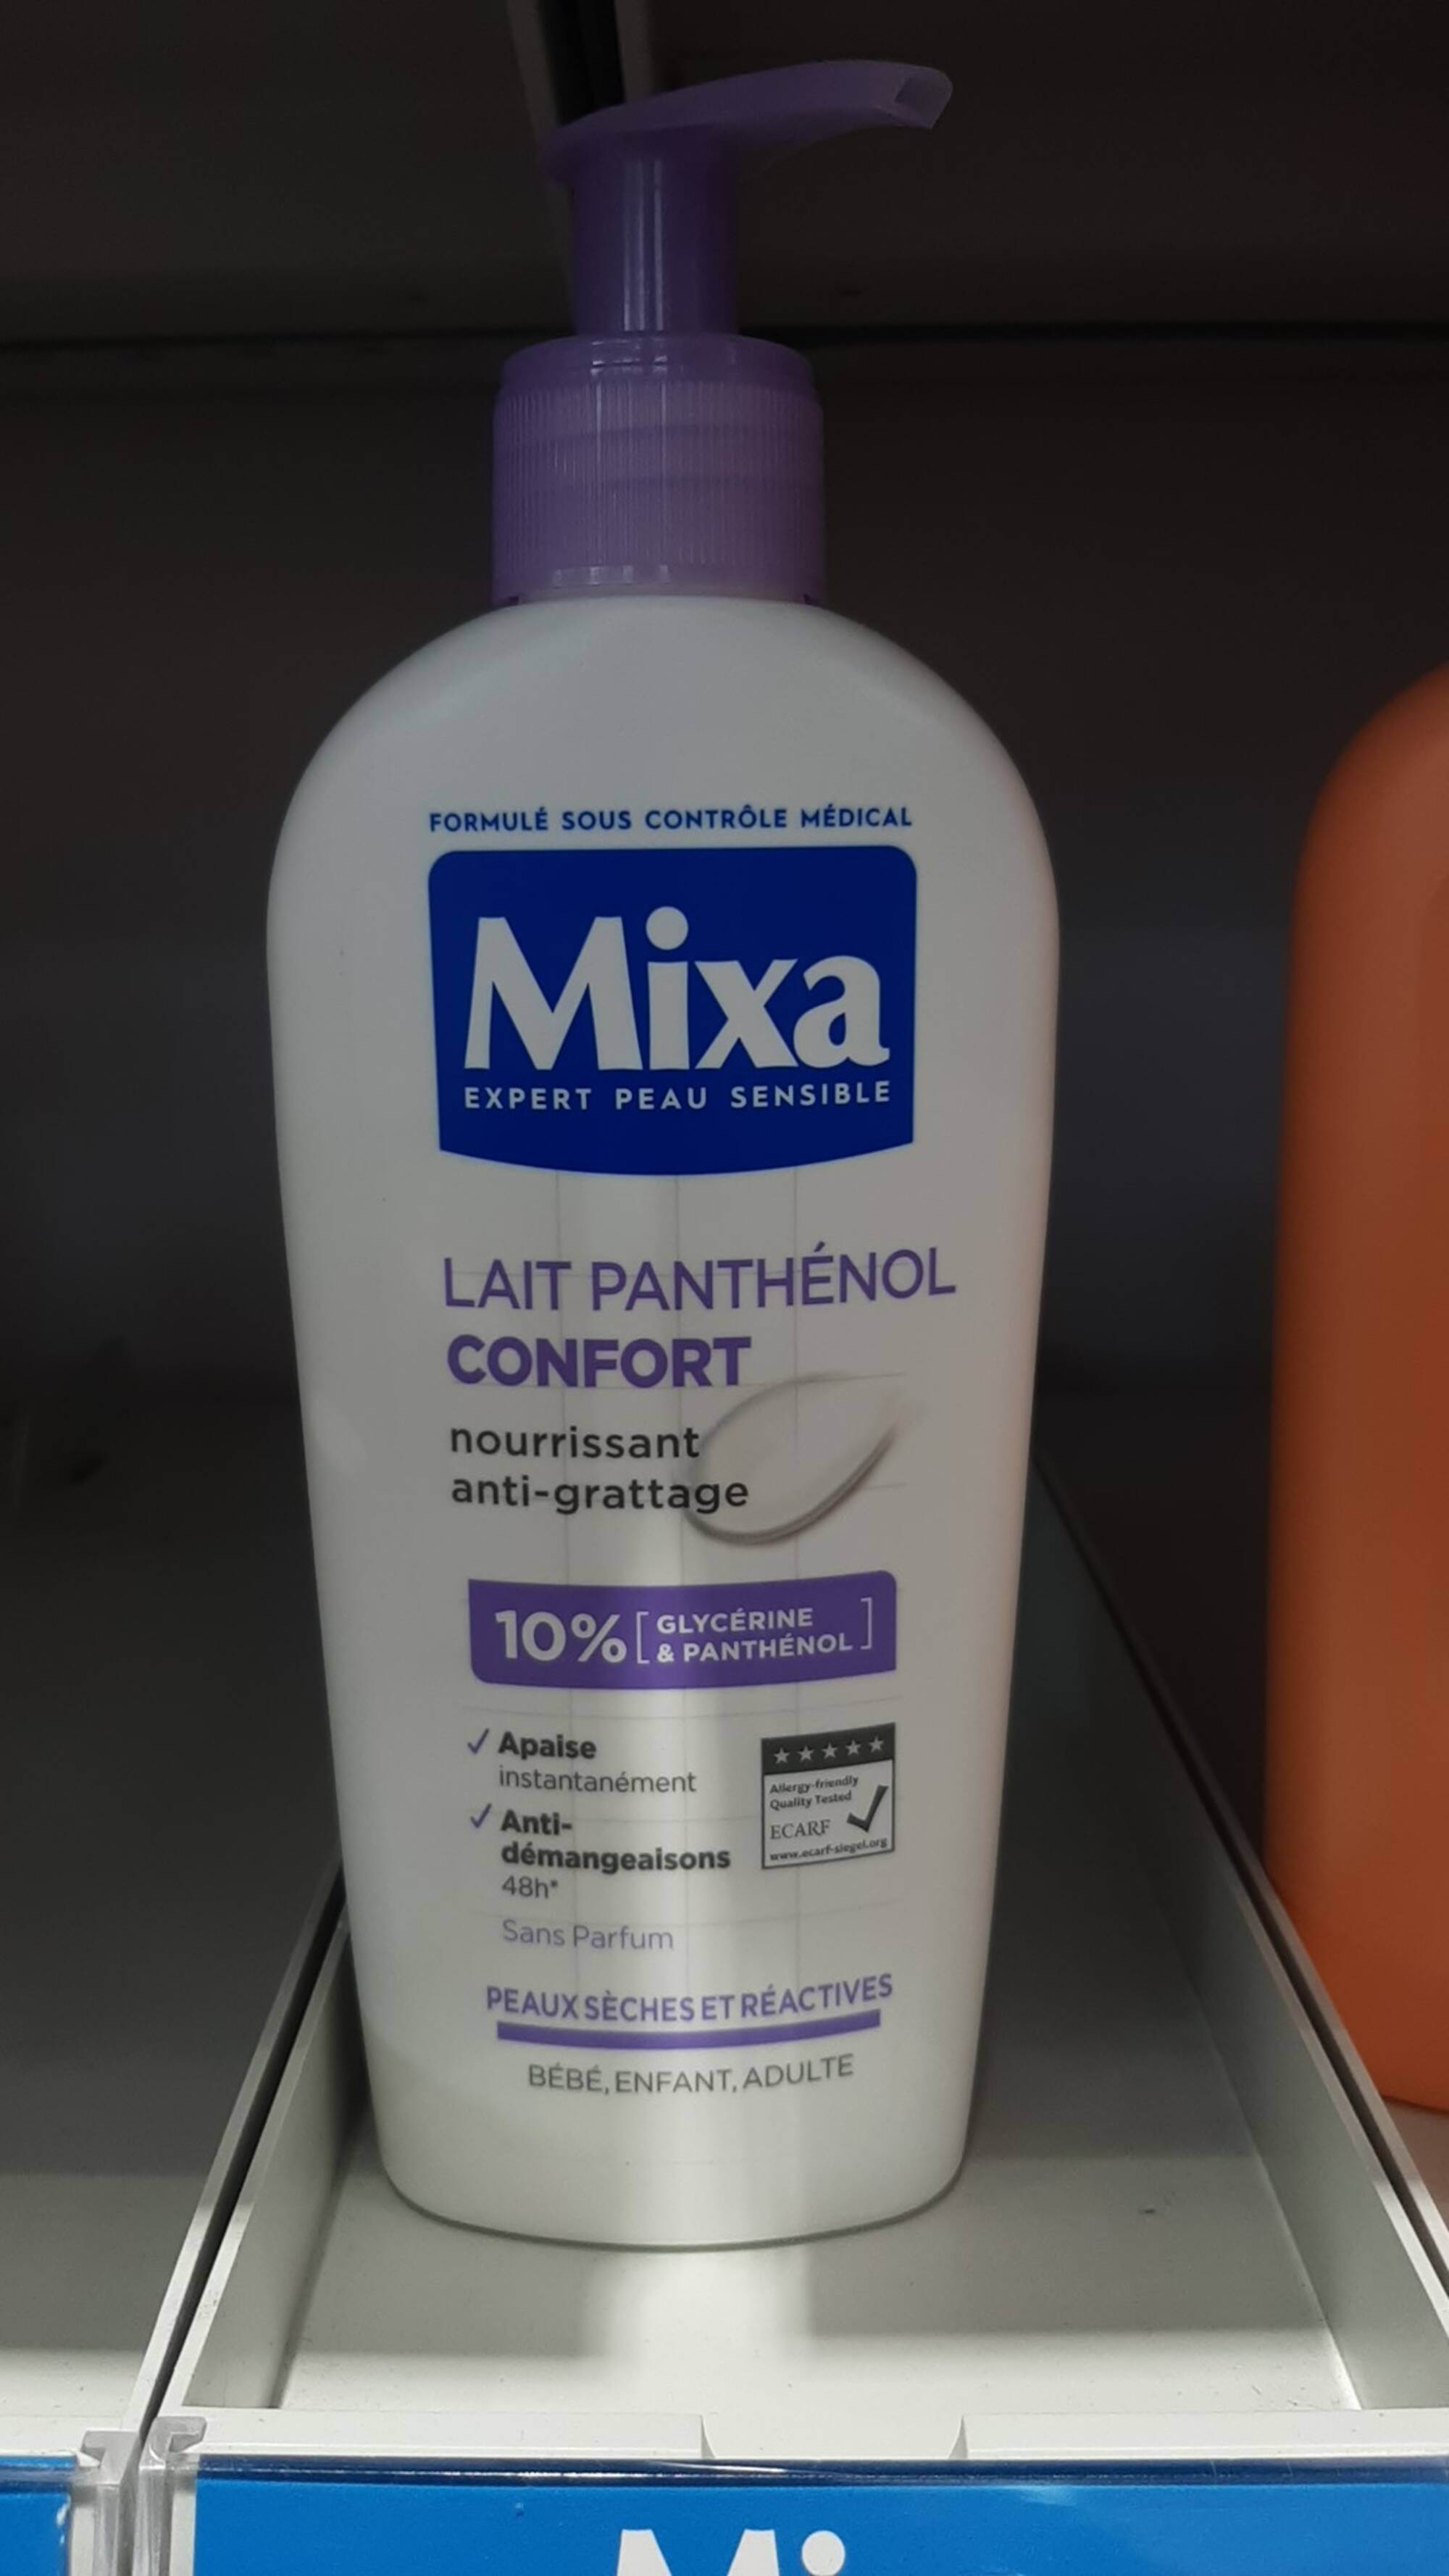 MIXA - Confort - Lait panthénol